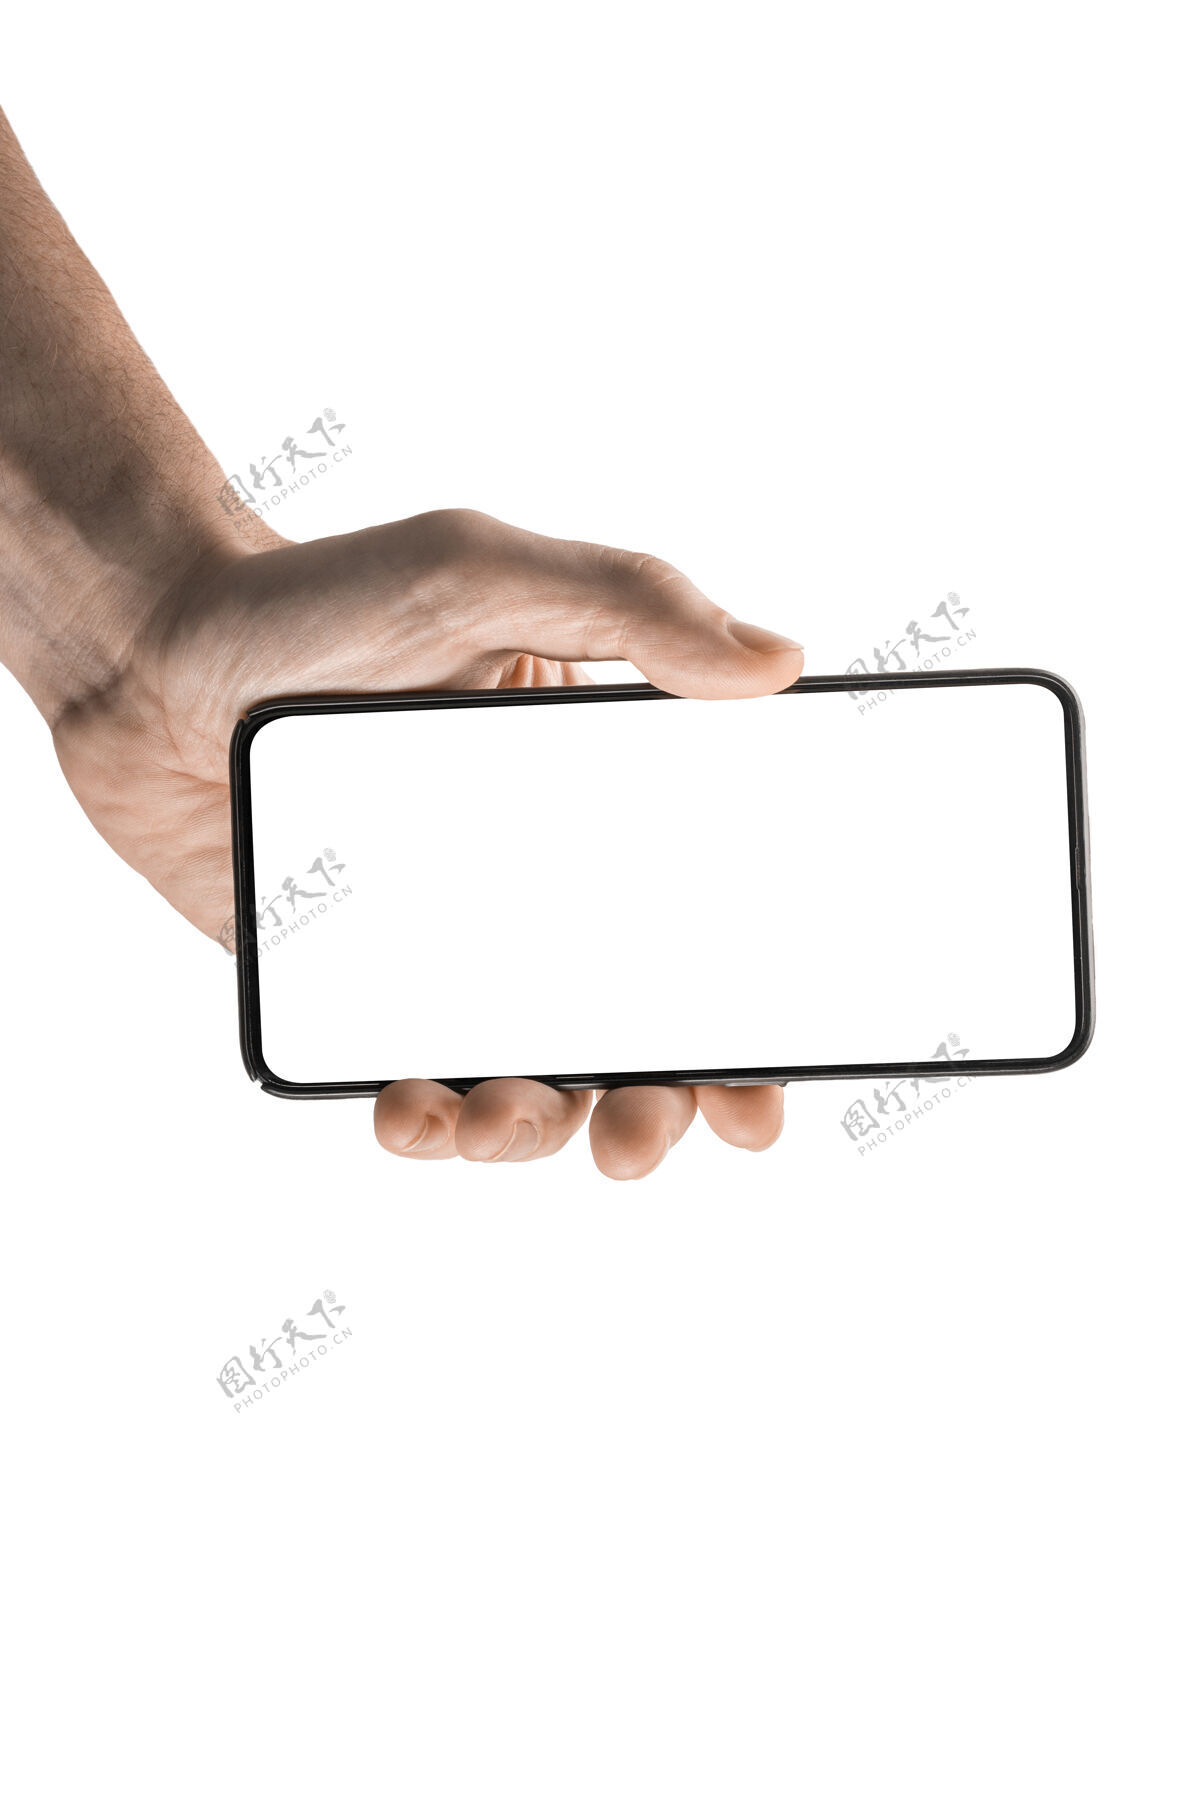 设备屏幕模拟手机一名男子手持黑色手机 背景为白色关闭手持电话白色空白屏幕空商业技术